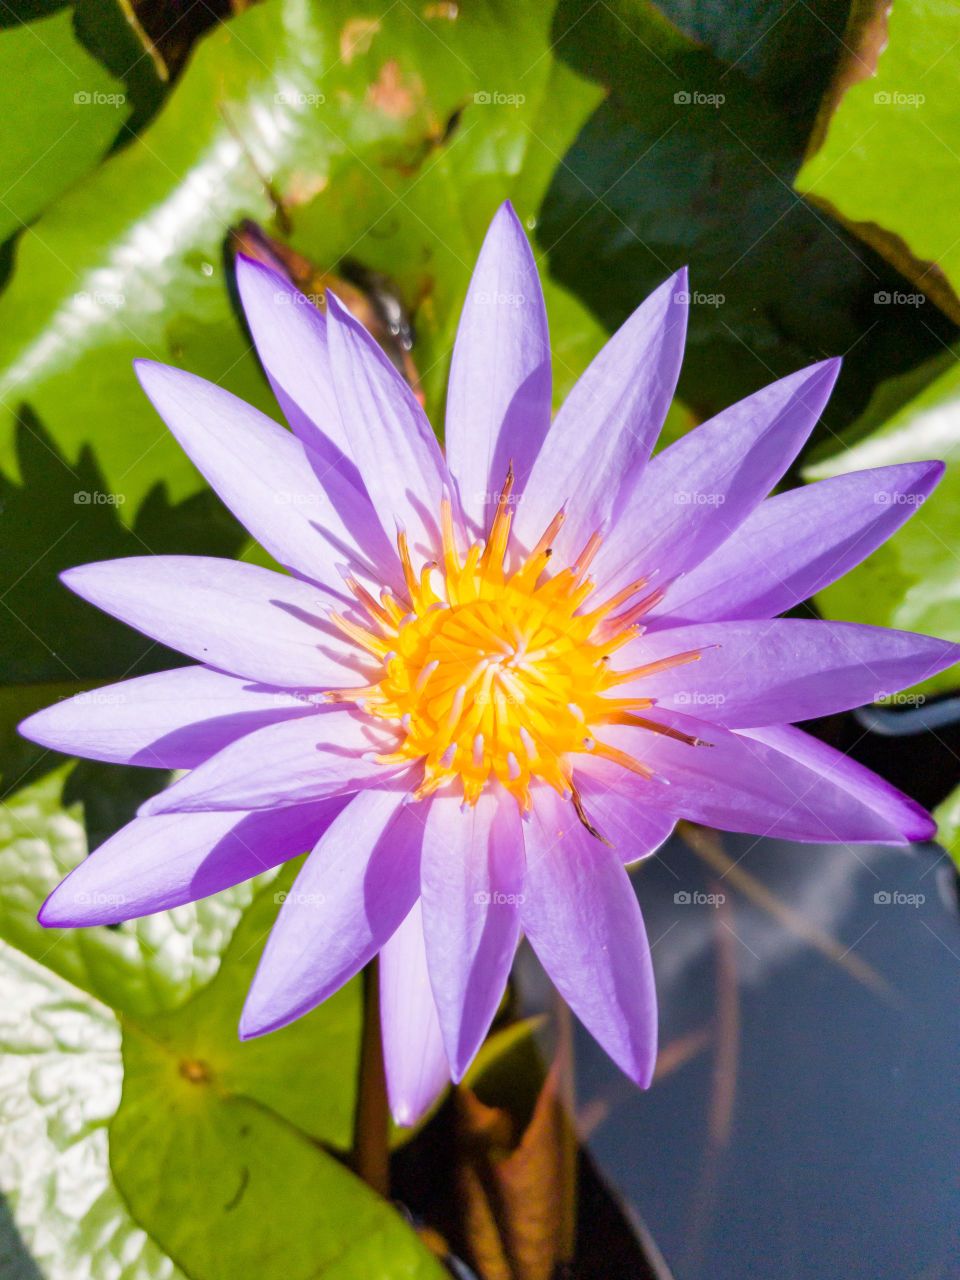 Lotus flower in pond look like the sun